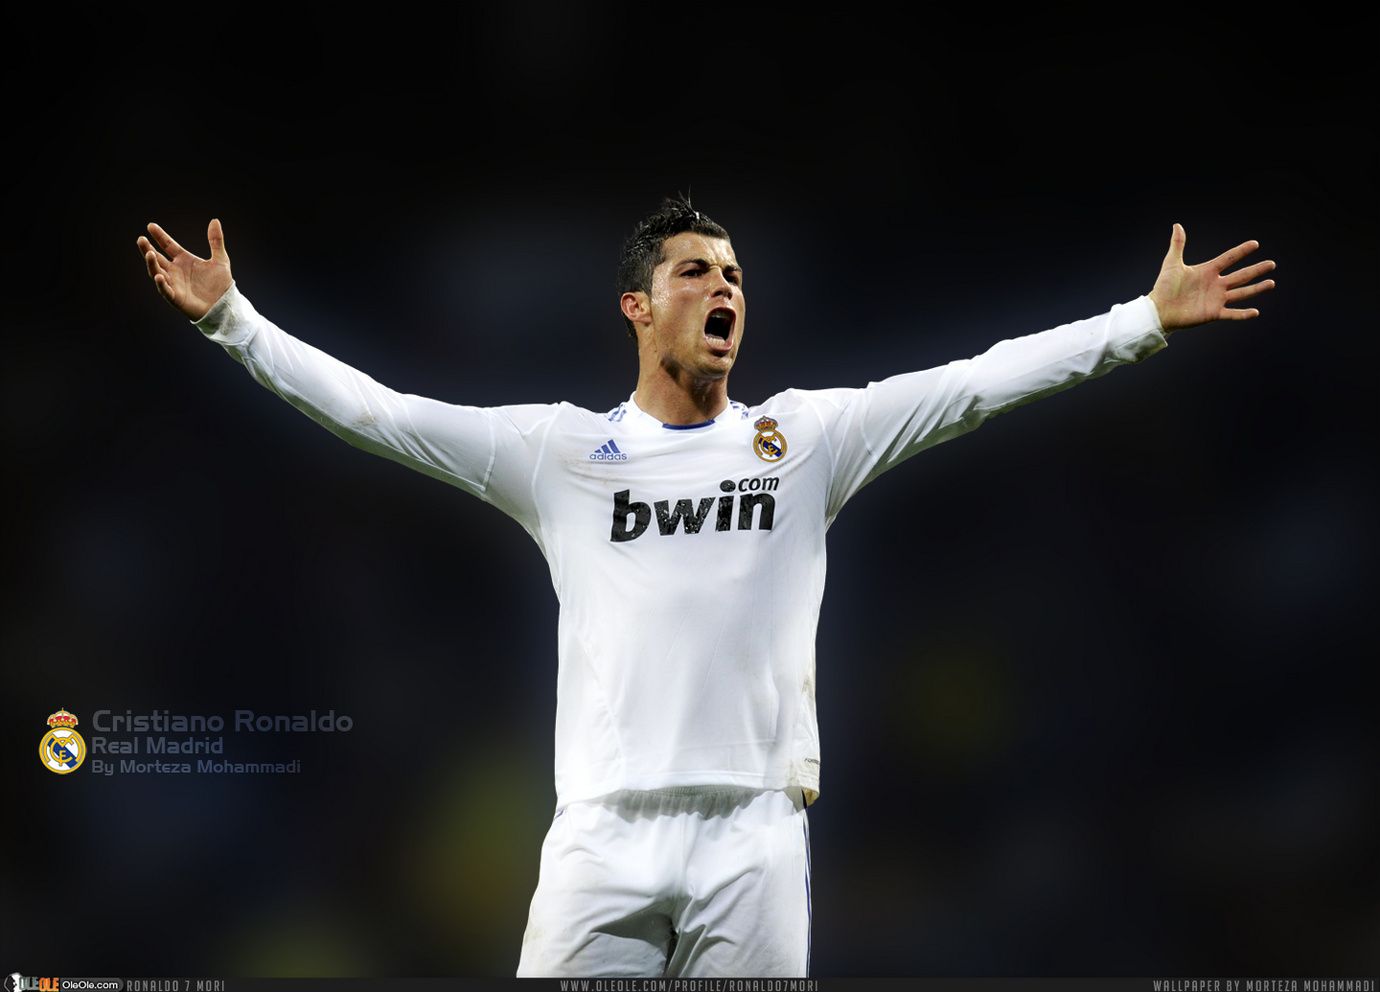 http://1.bp.blogspot.com/-VbLy-7XVcTA/TdDaqMtiK7I/AAAAAAAALoI/r6s5HdjtrqQ/s1600/Cristiano-Ronaldo-New-Wallpaper-2011.jpg